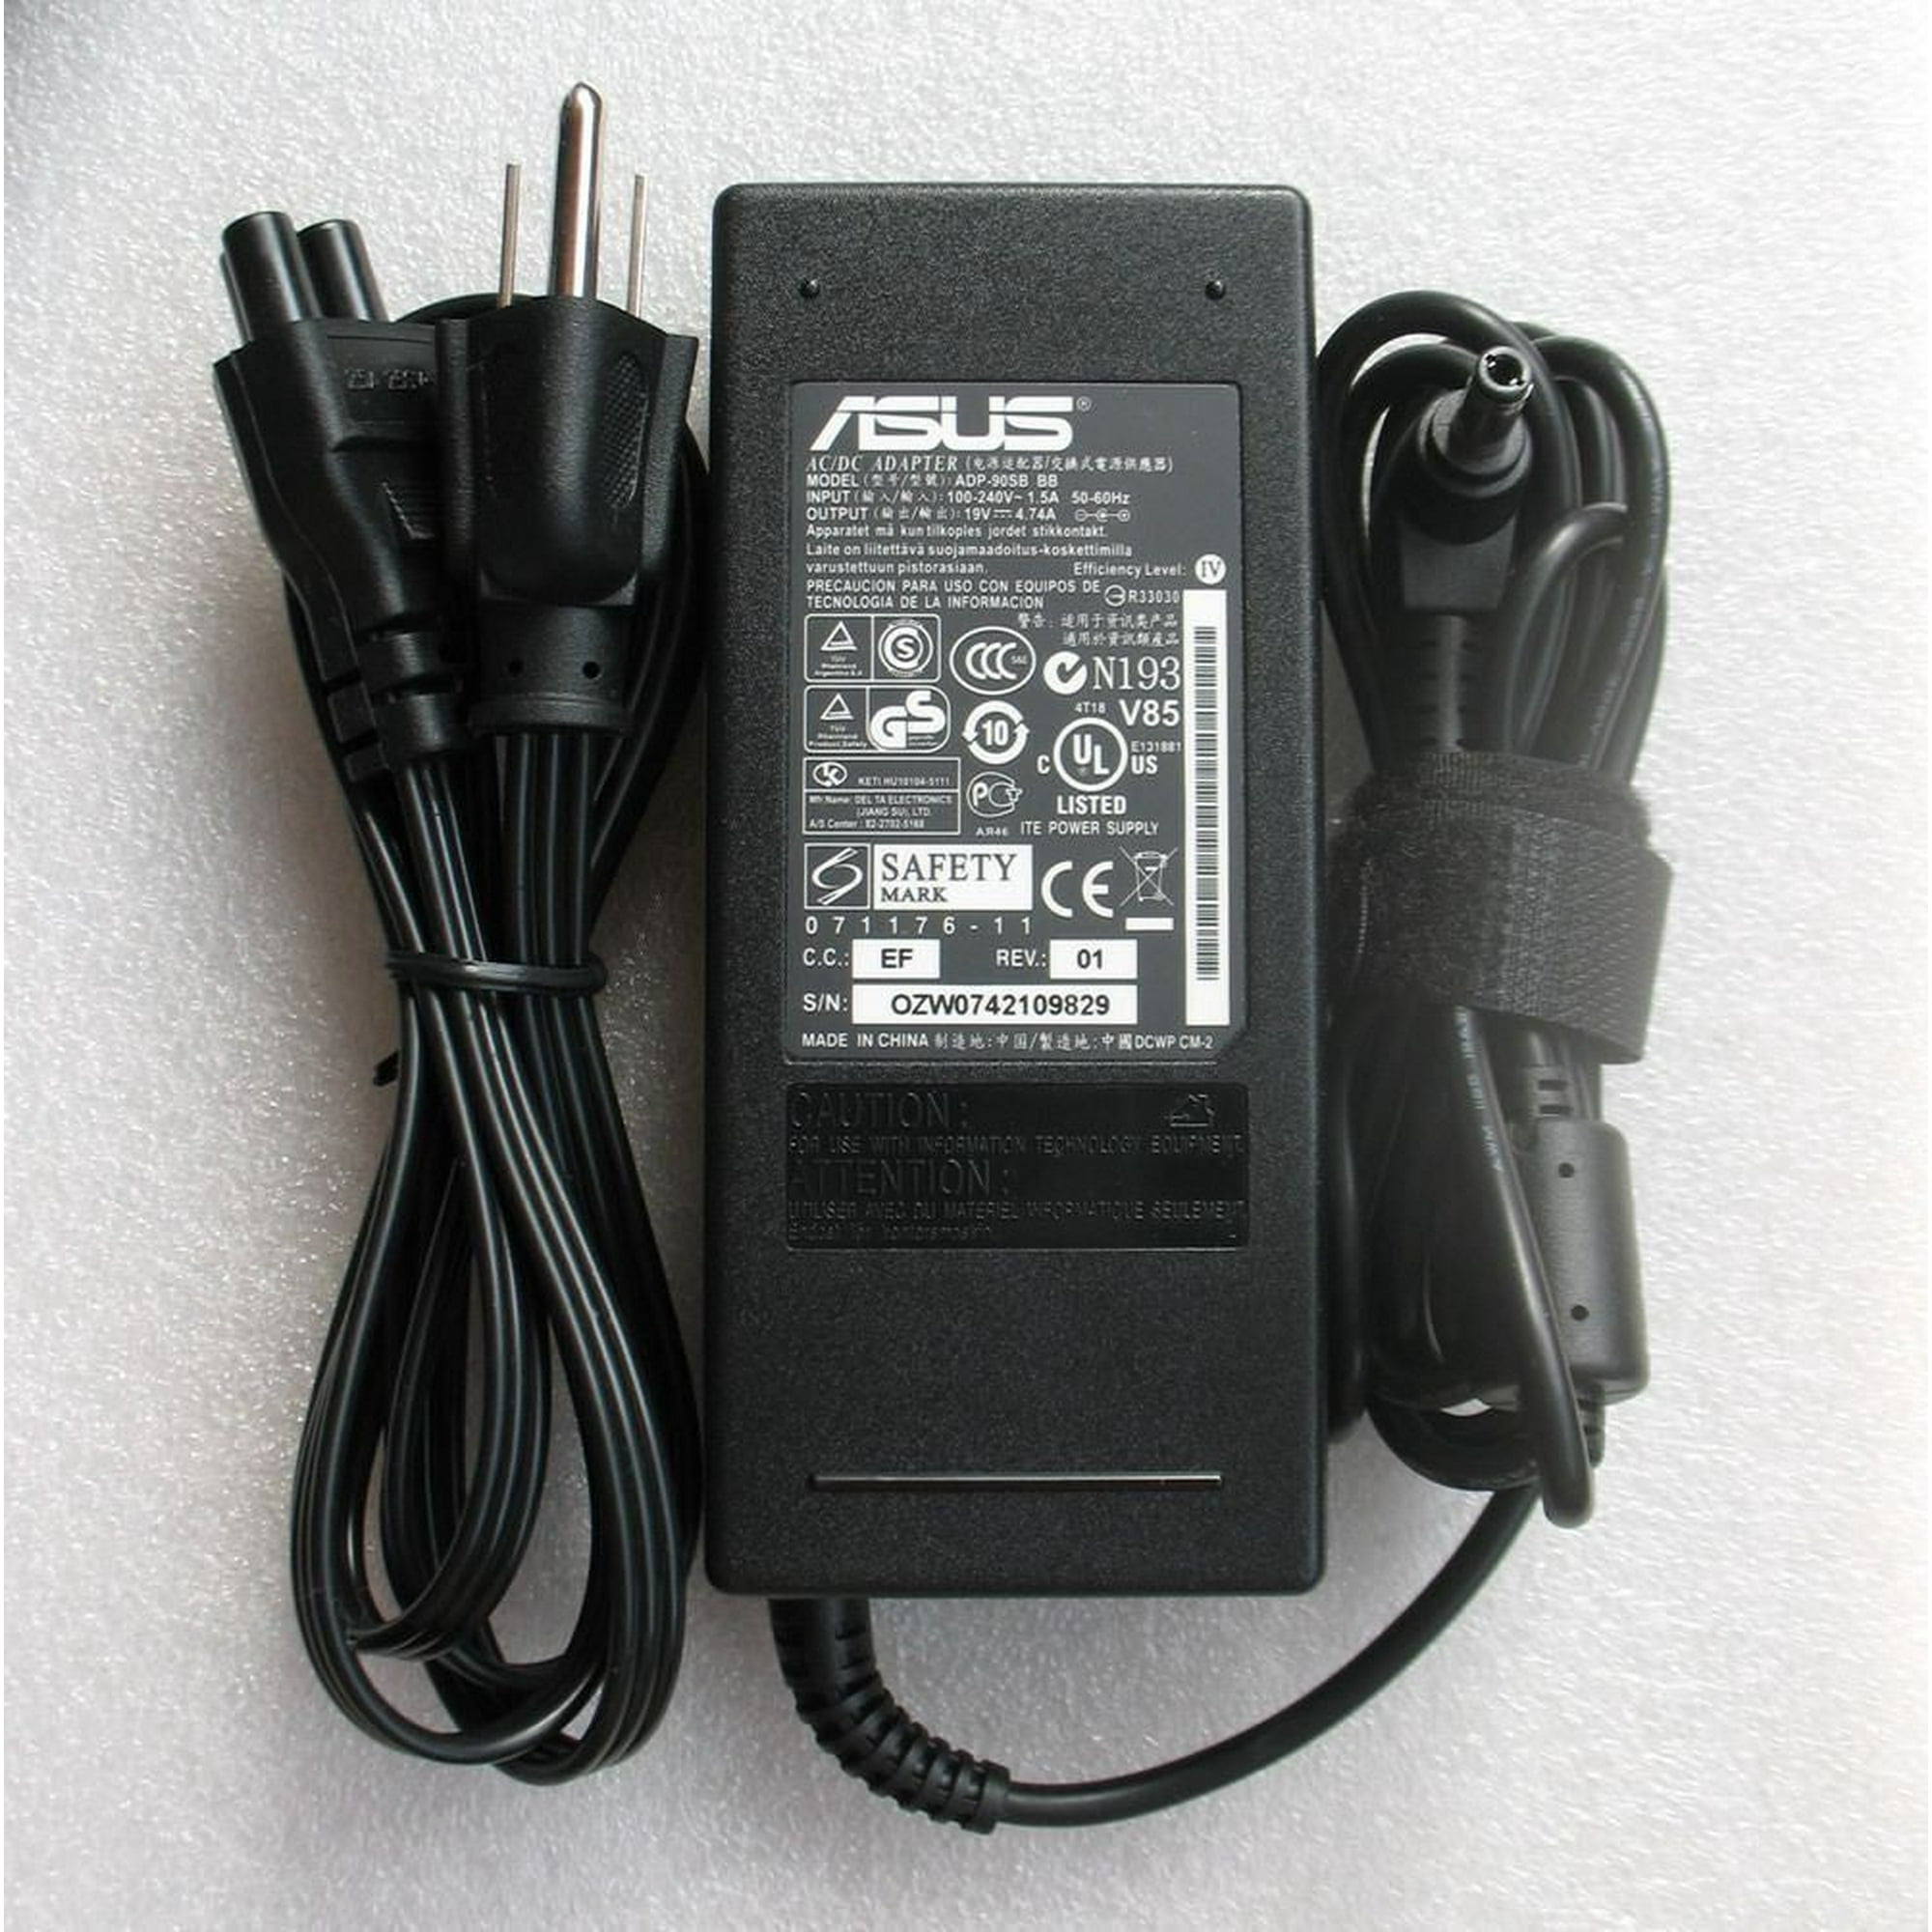 Nouveau véritable adaptateur secteur pour ordinateur portable Asus et  chargeur de cordon d'alimentation PA-1900-24 19V 4.74A 90W 5.5*2.5mm